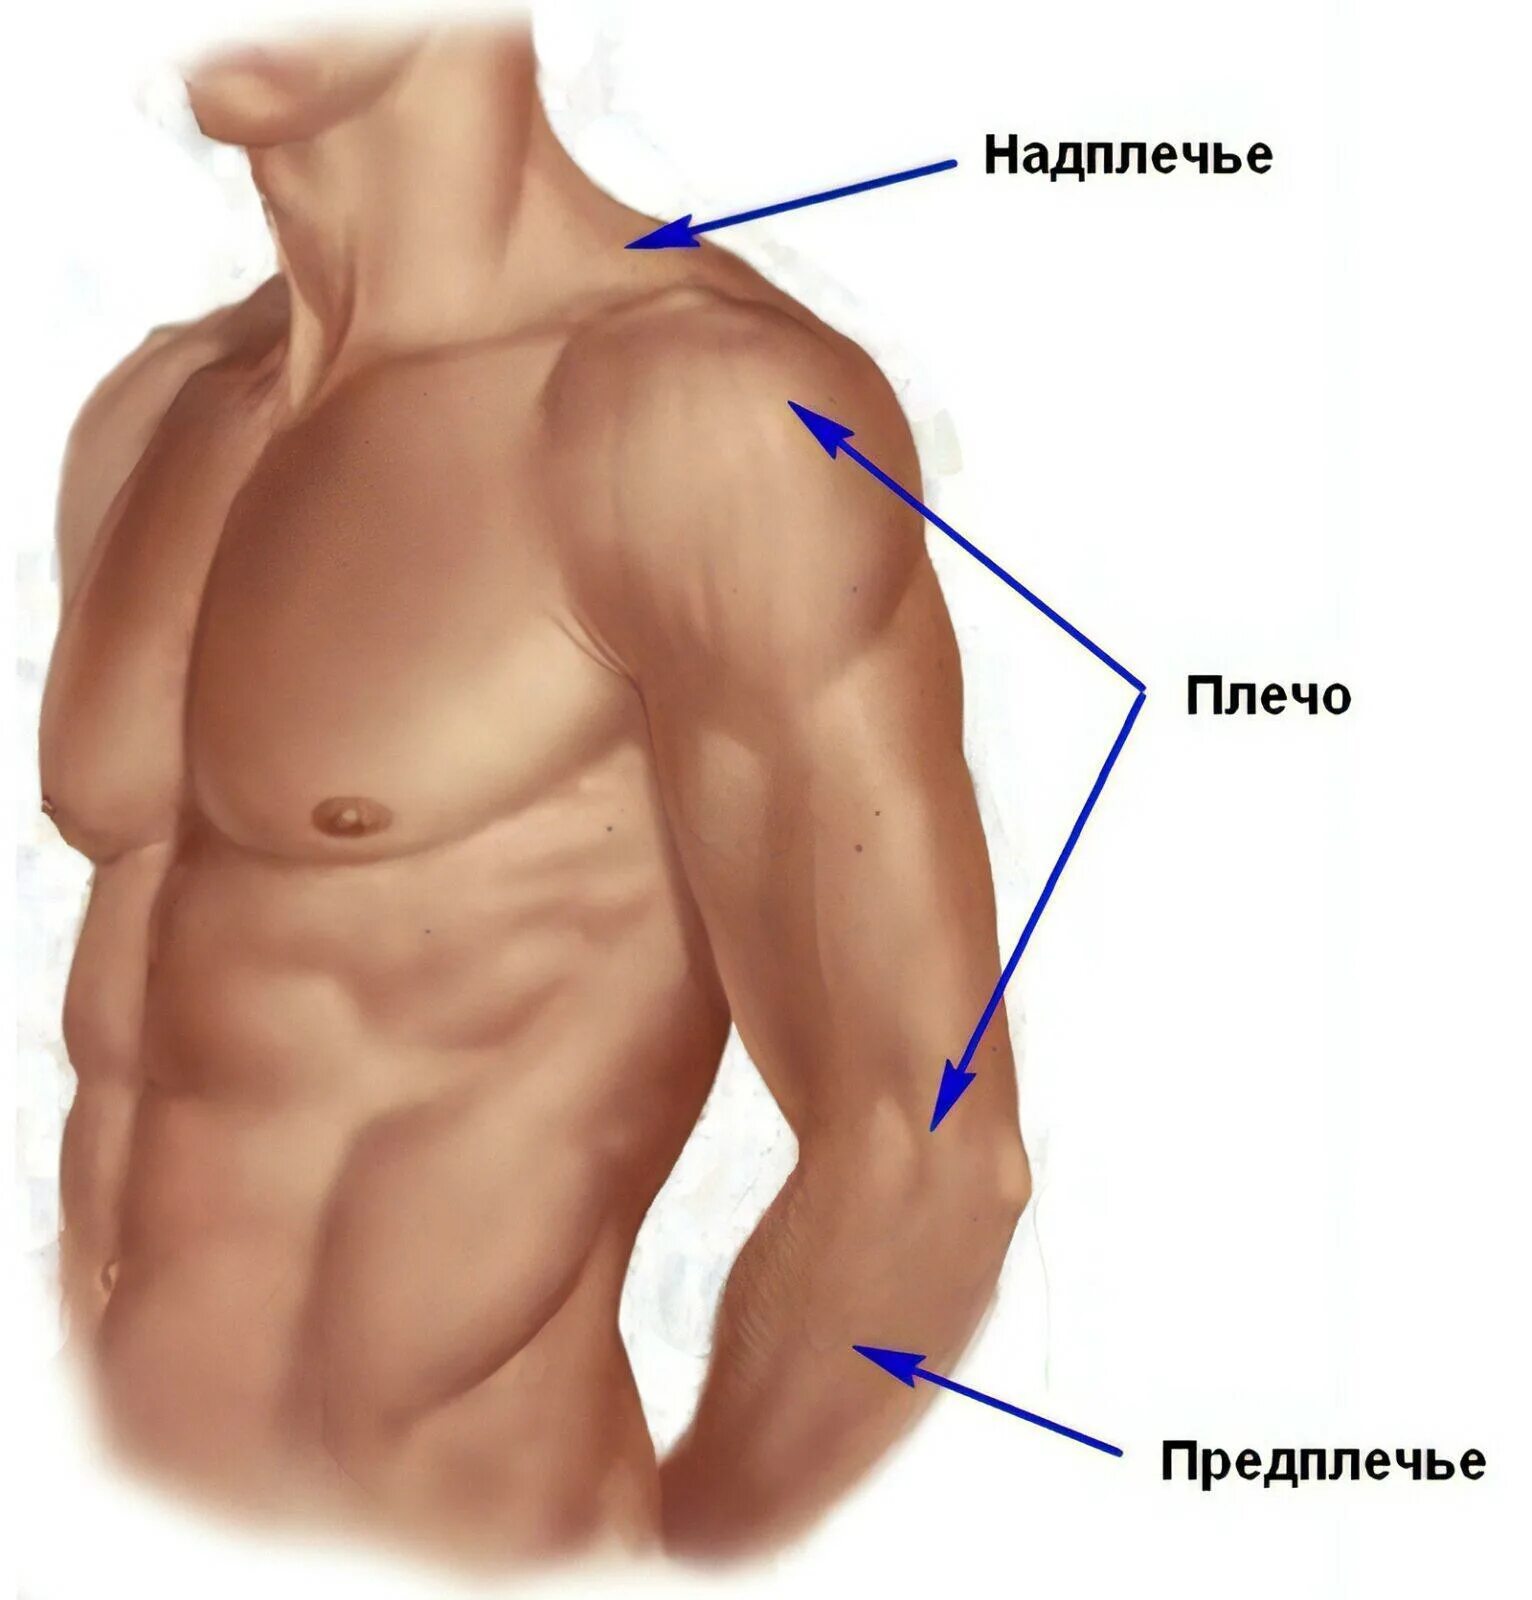 Надплечье. Плечо и предплечье анатомия. Где плечо а где предплечье у человека. Предплечье плечо надплечье. Анатомия предплечья человека.